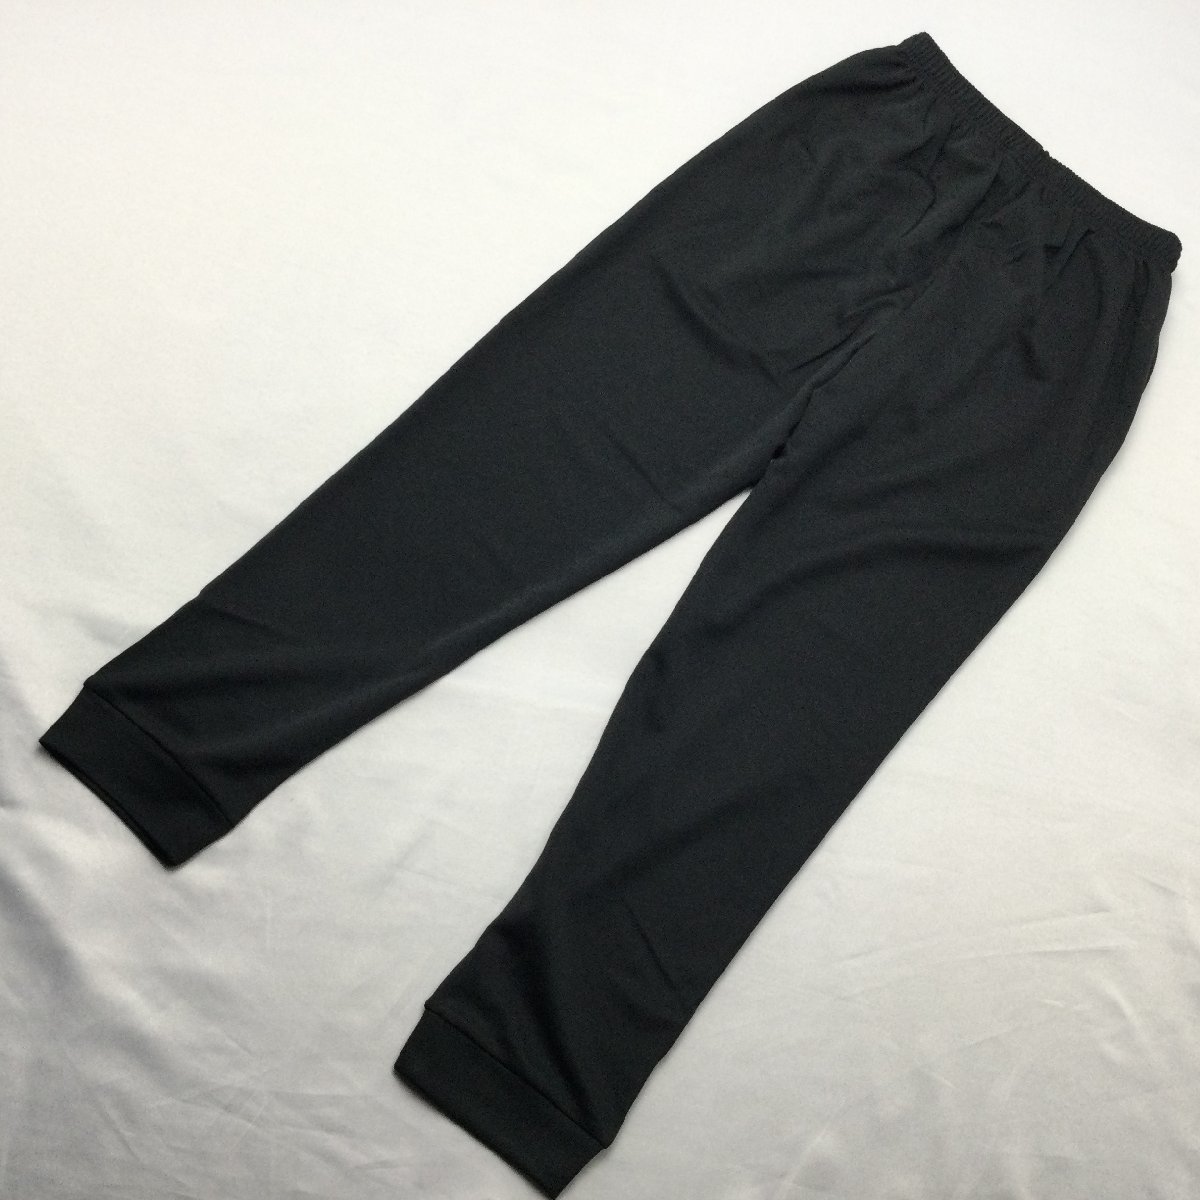 [ бесплатная доставка ][ новый товар ]Kaepa женский тренировочные штаны (. вода скорость .UV cut ) M черный * violet *471510